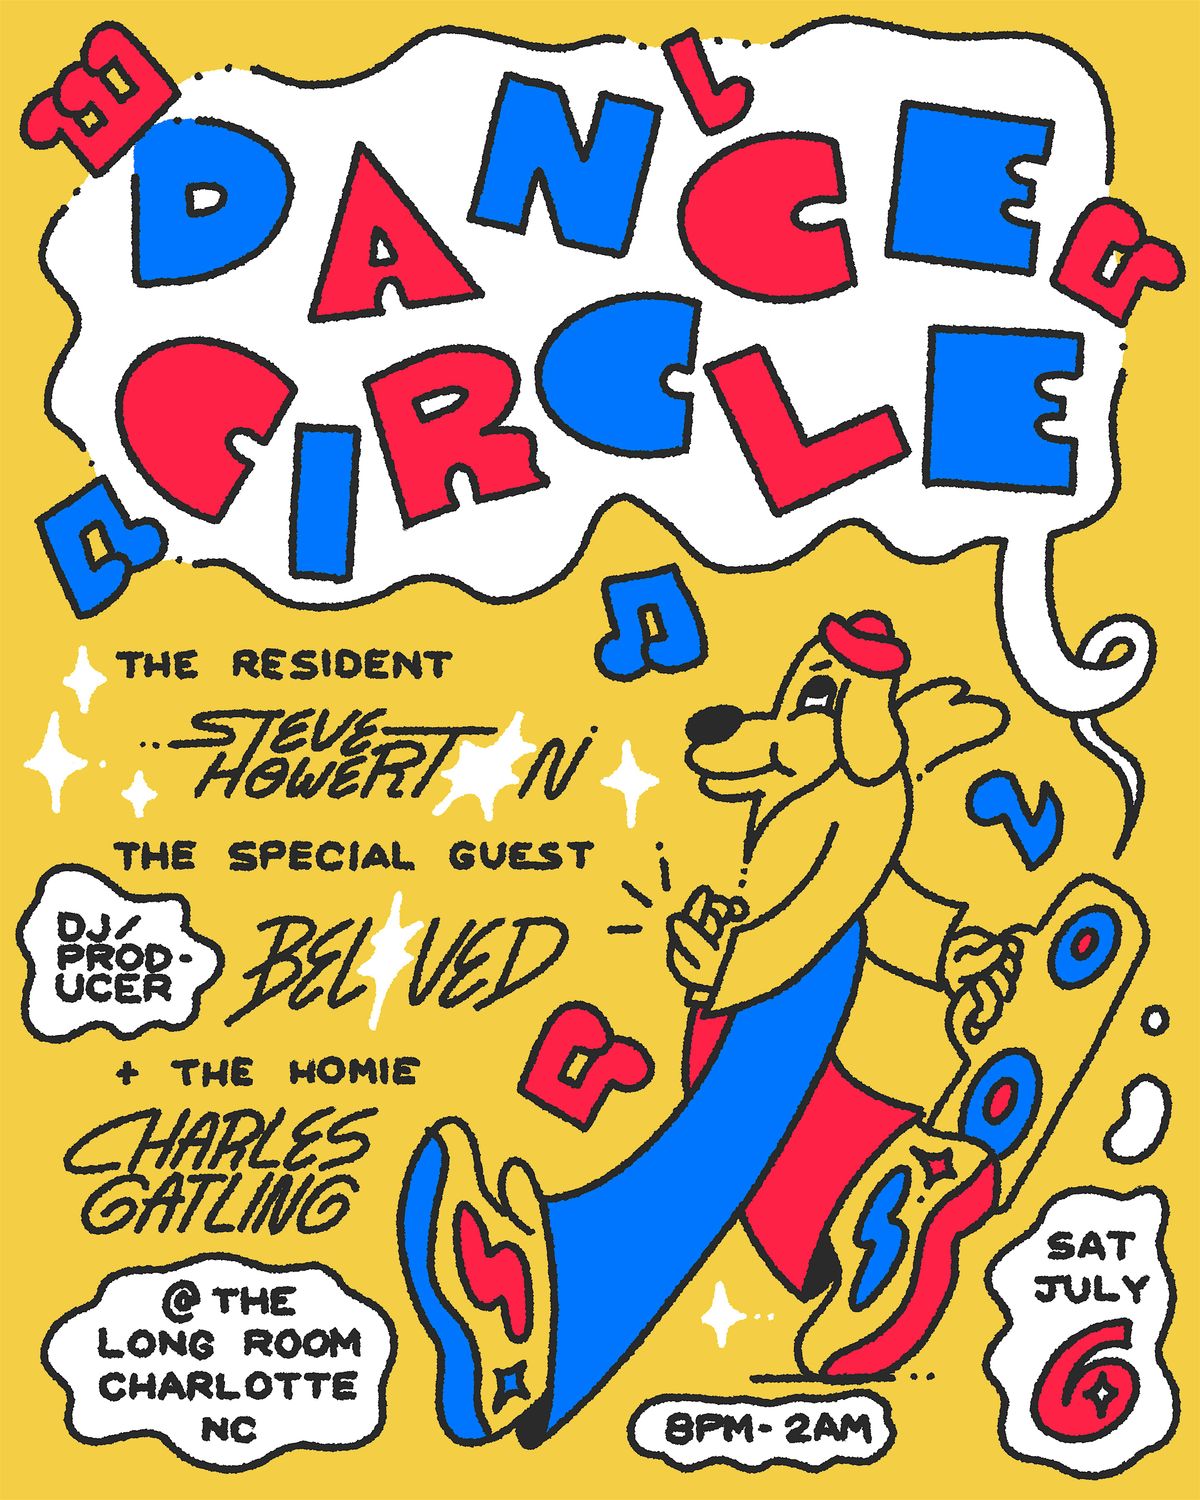 Dance Circle Summer jump off W\/Special Guest DJ Beloved, Steve Howerton +!!